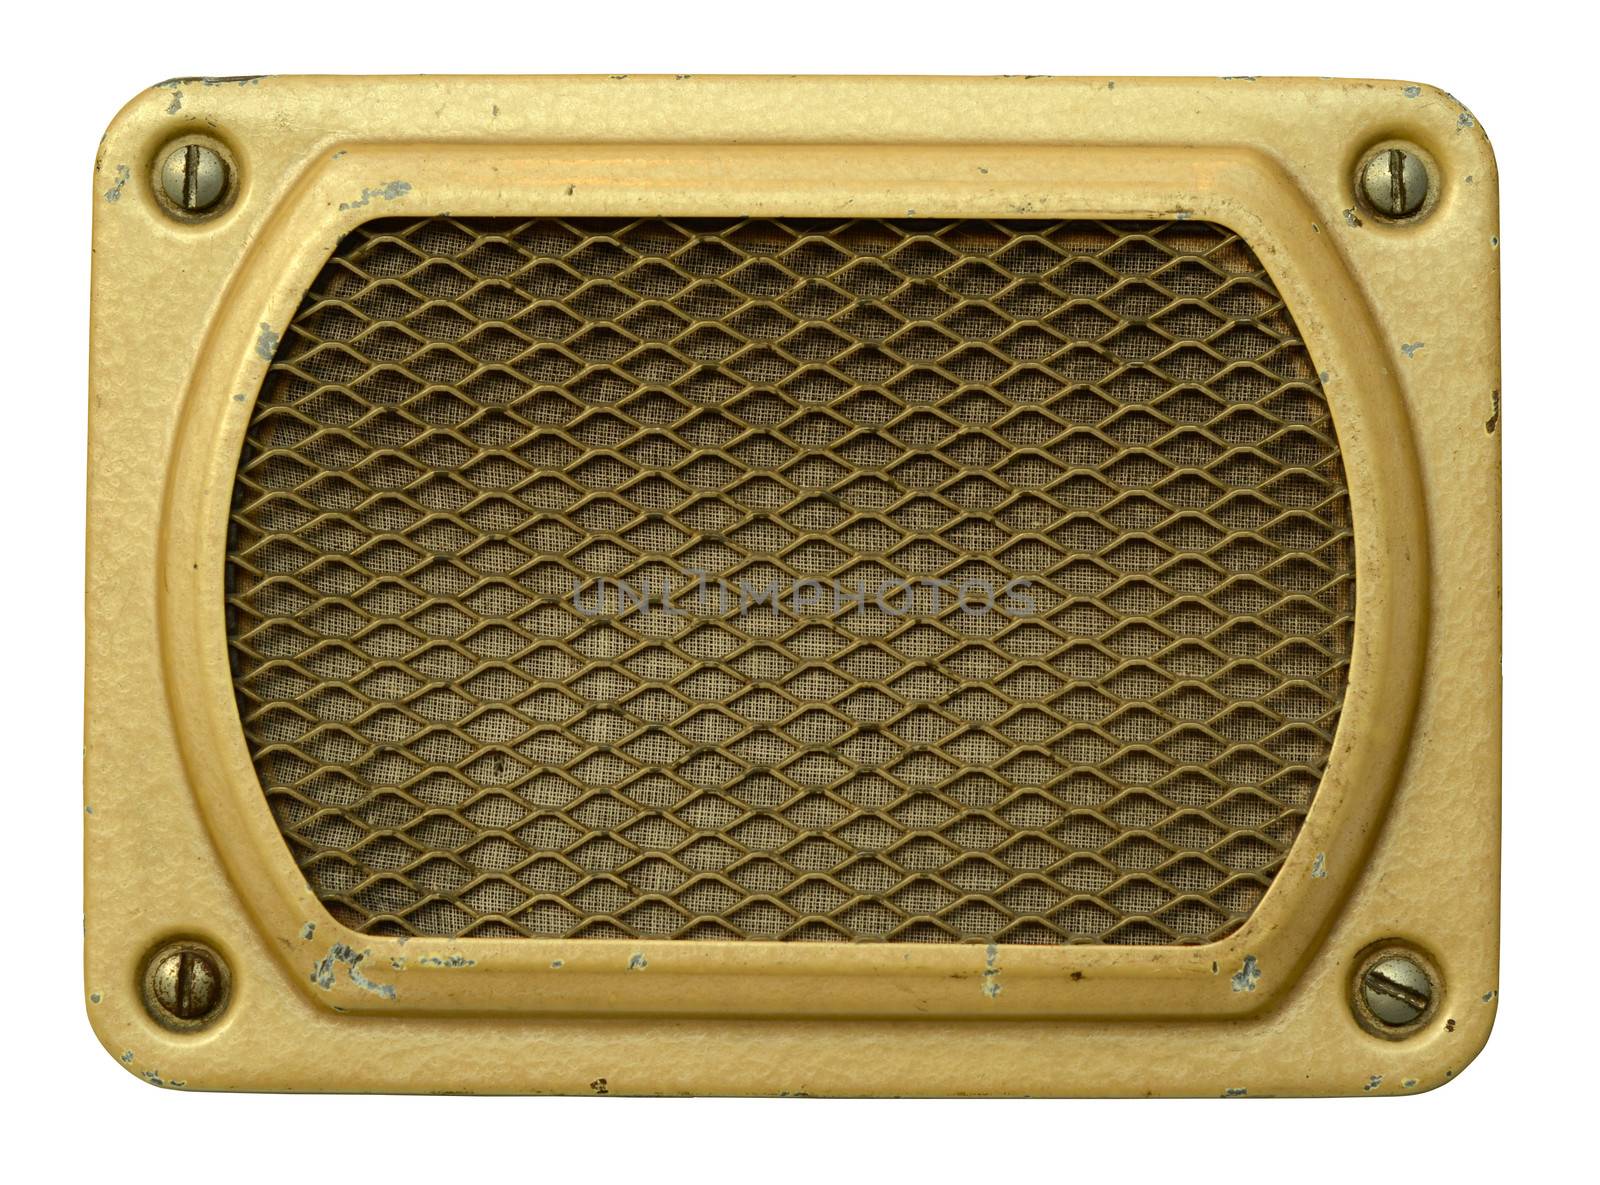 Vintage Speaker by mrdoomits